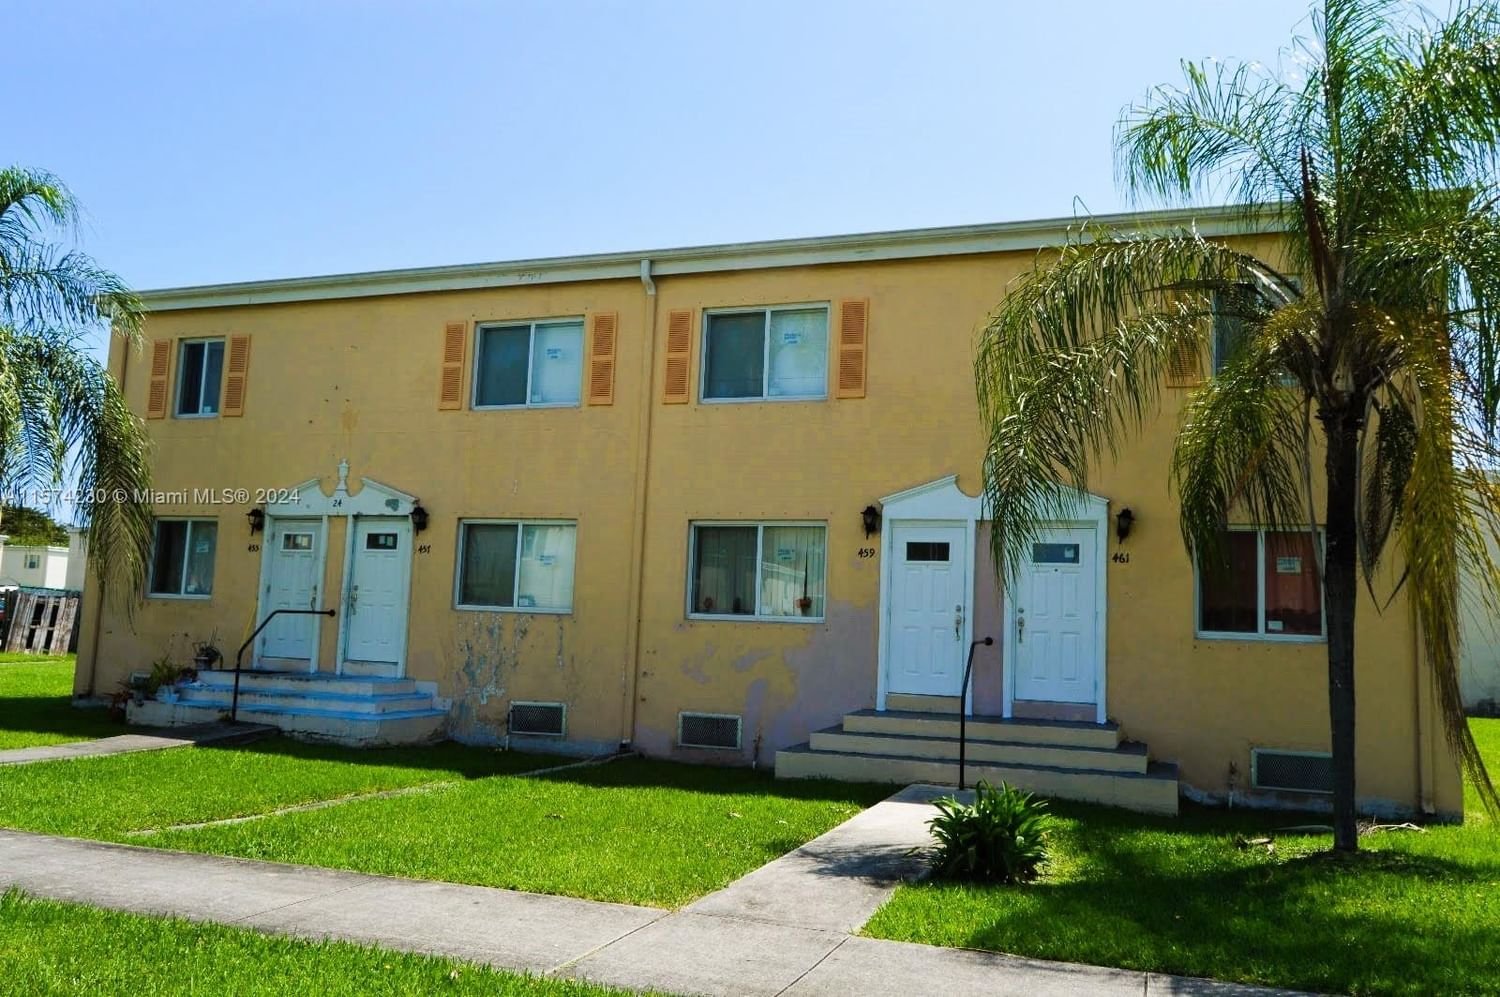 Real estate property located at 459 84th St #459, Miami-Dade County, SUNSET PALM VILLAS CONDO, Miami, FL